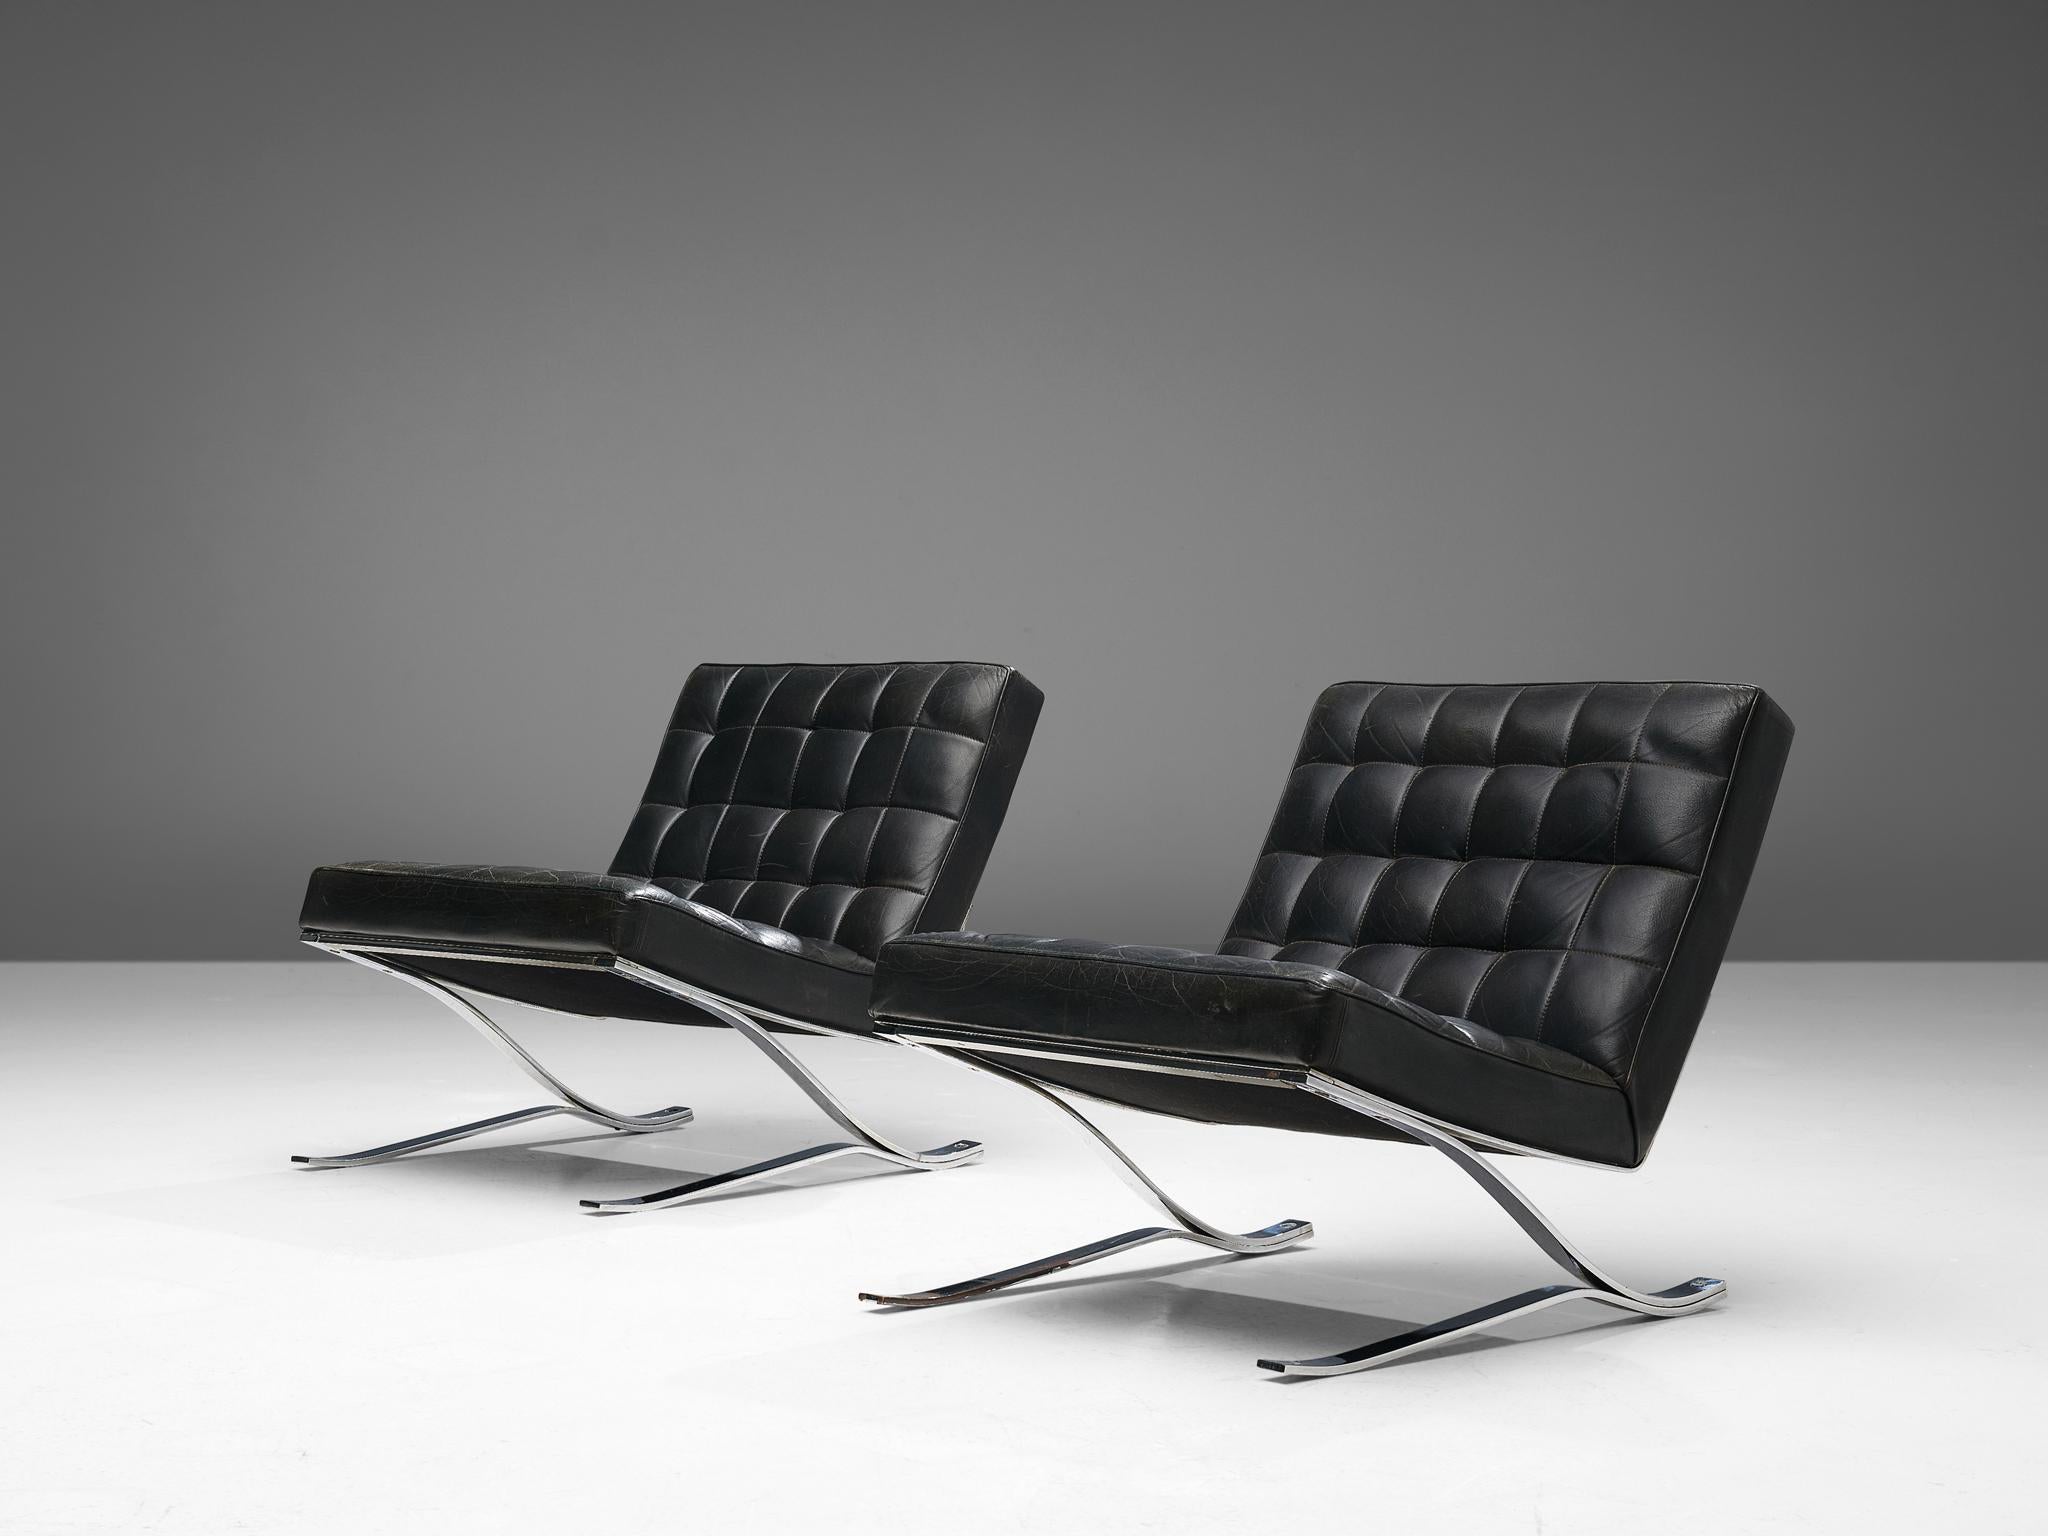 Rudolf Horn pour Rölf Potsdam, chaises longues en porte-à-faux, cuir, acier chromé, Allemagne, design 1964 et fabriqué en 1966

Rudolf Horn, designer de la DDR, admirait beaucoup l'emblématique 